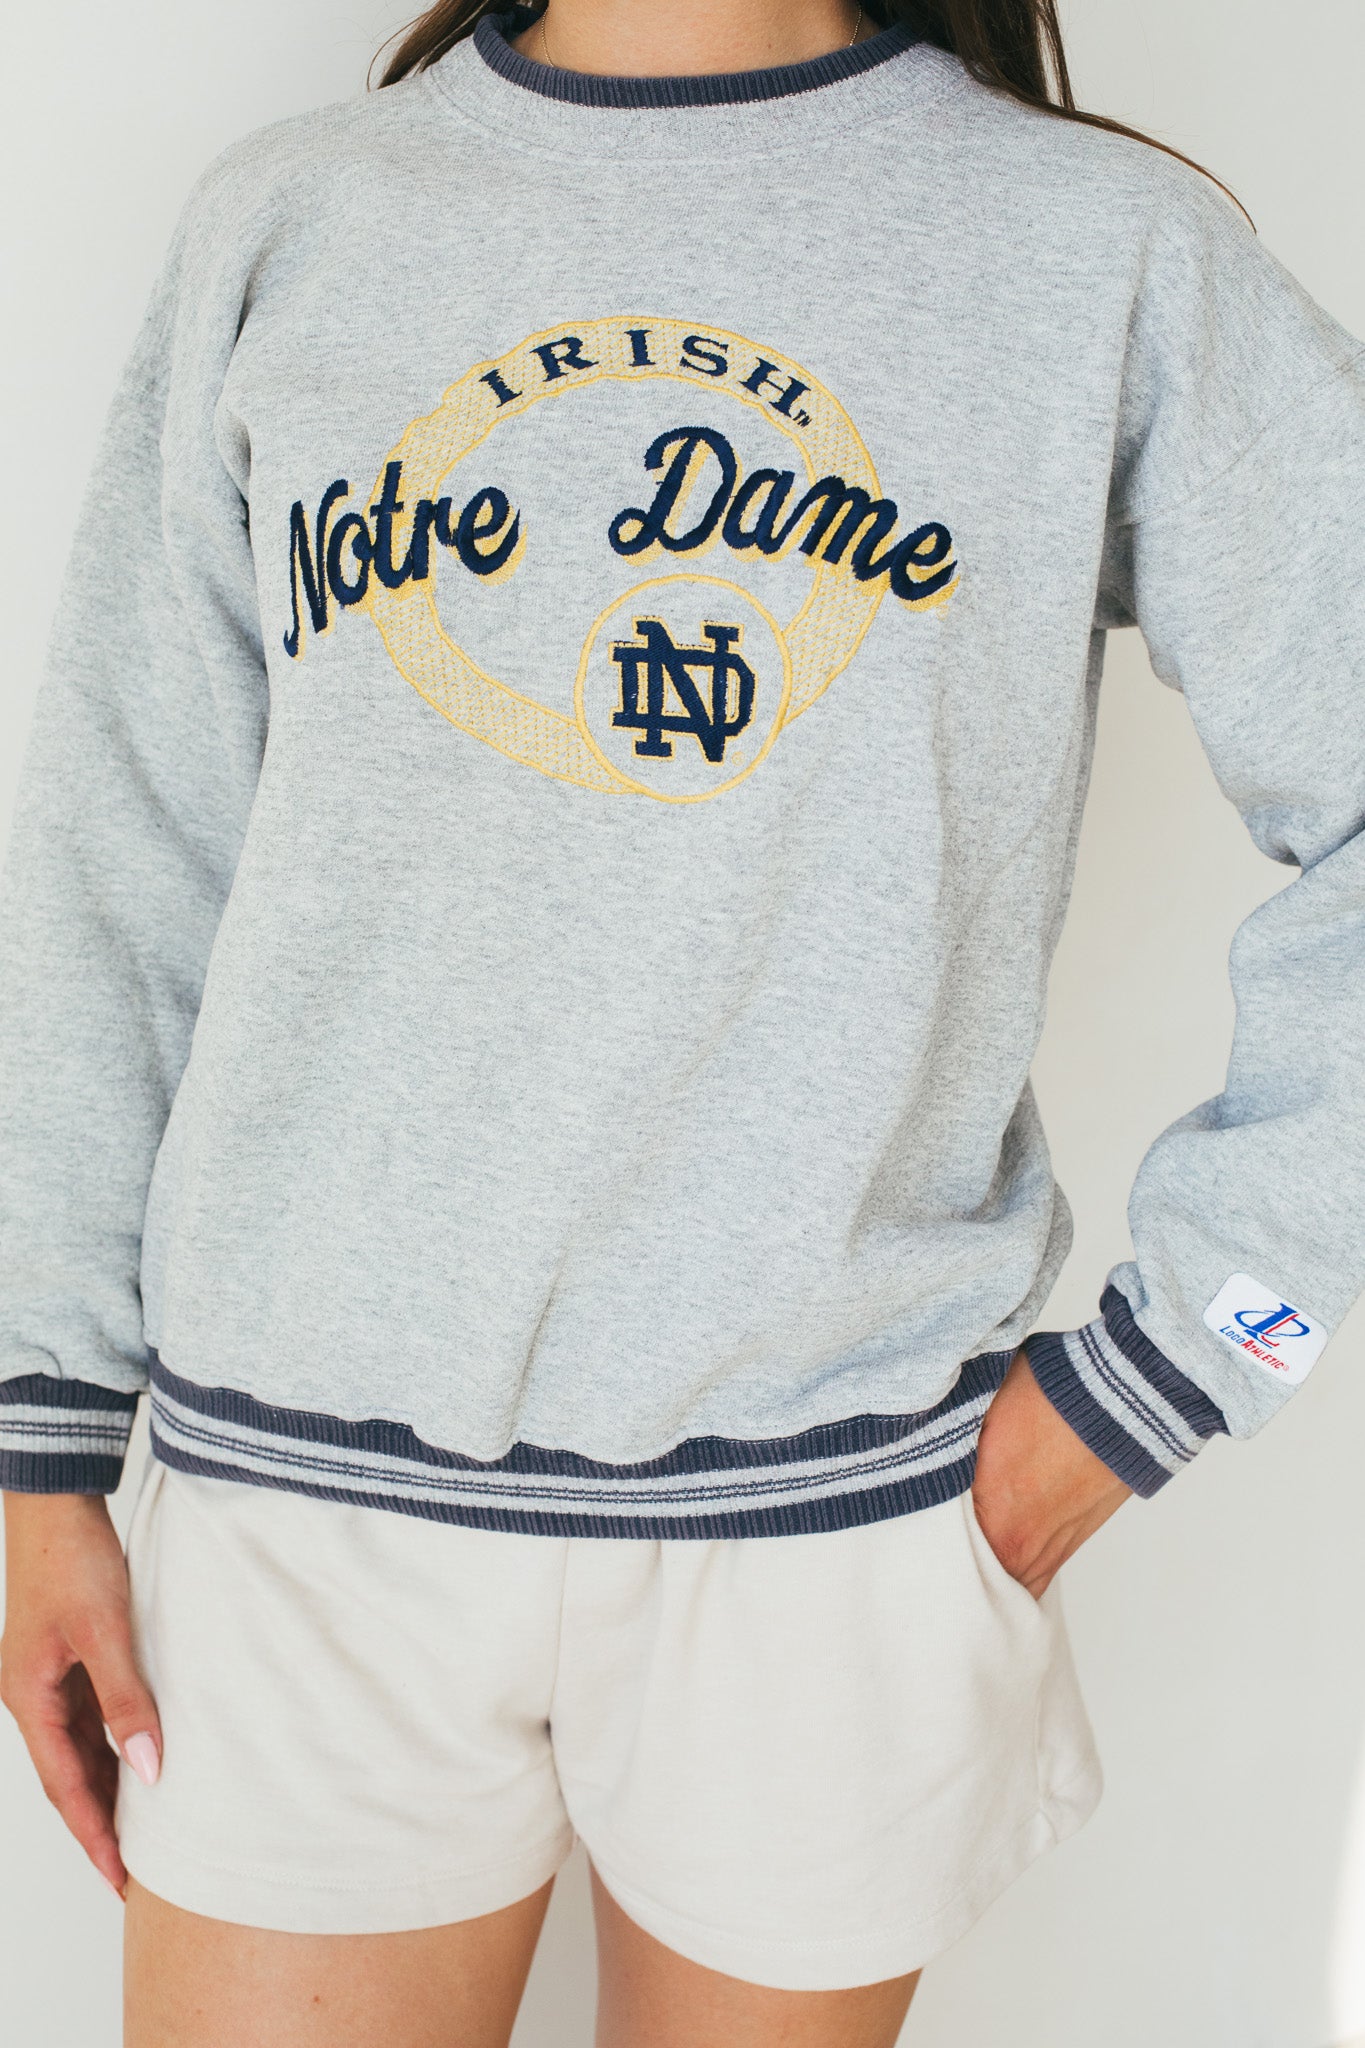 Notre Dame - Sweatshirt